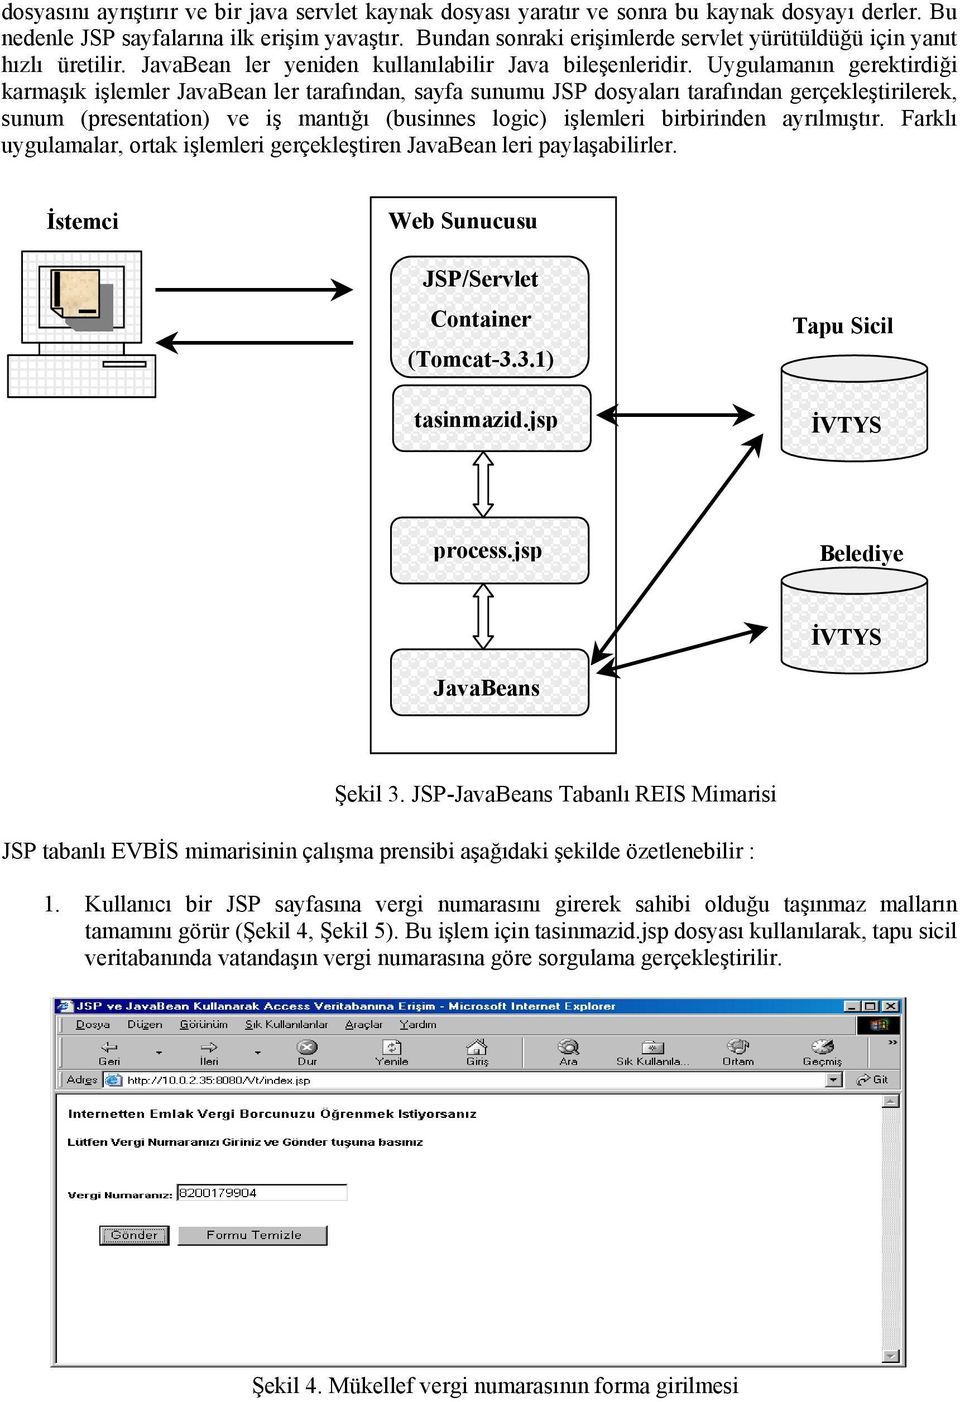 Uygulamanın gerektirdiği karmaşık işlemler JavaBean ler tarafından, sayfa sunumu JSP dosyaları tarafından gerçekleştirilerek, sunum (presentation) ve iş mantığı (businnes logic) işlemleri birbirinden